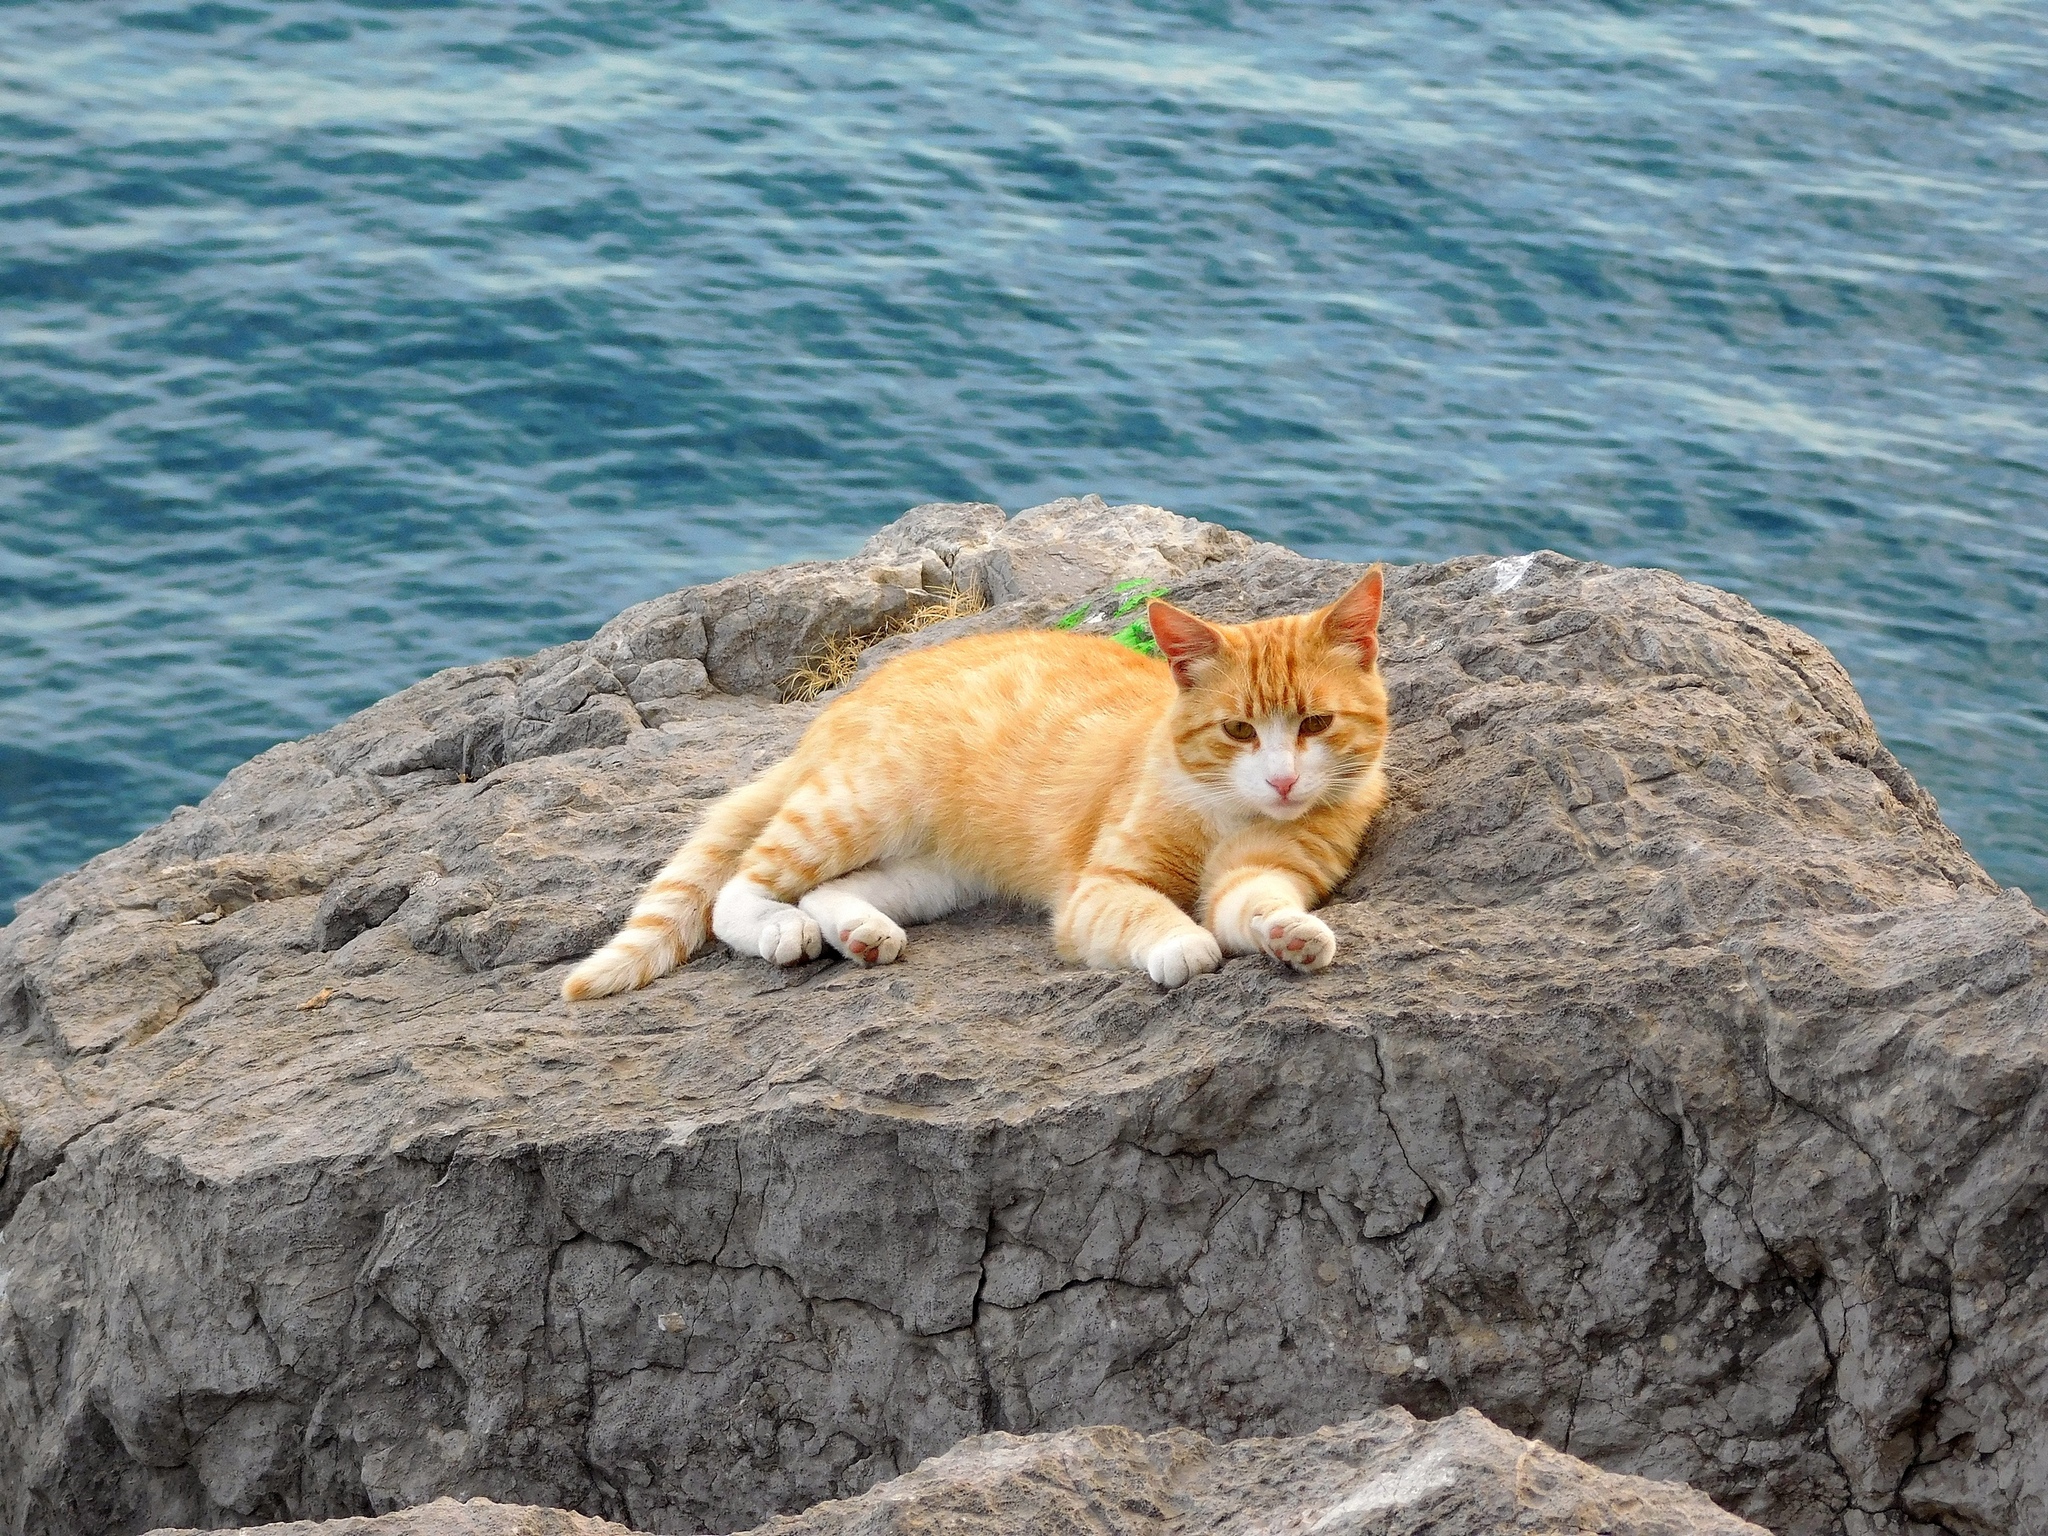 Рыжий кот на фоне моря